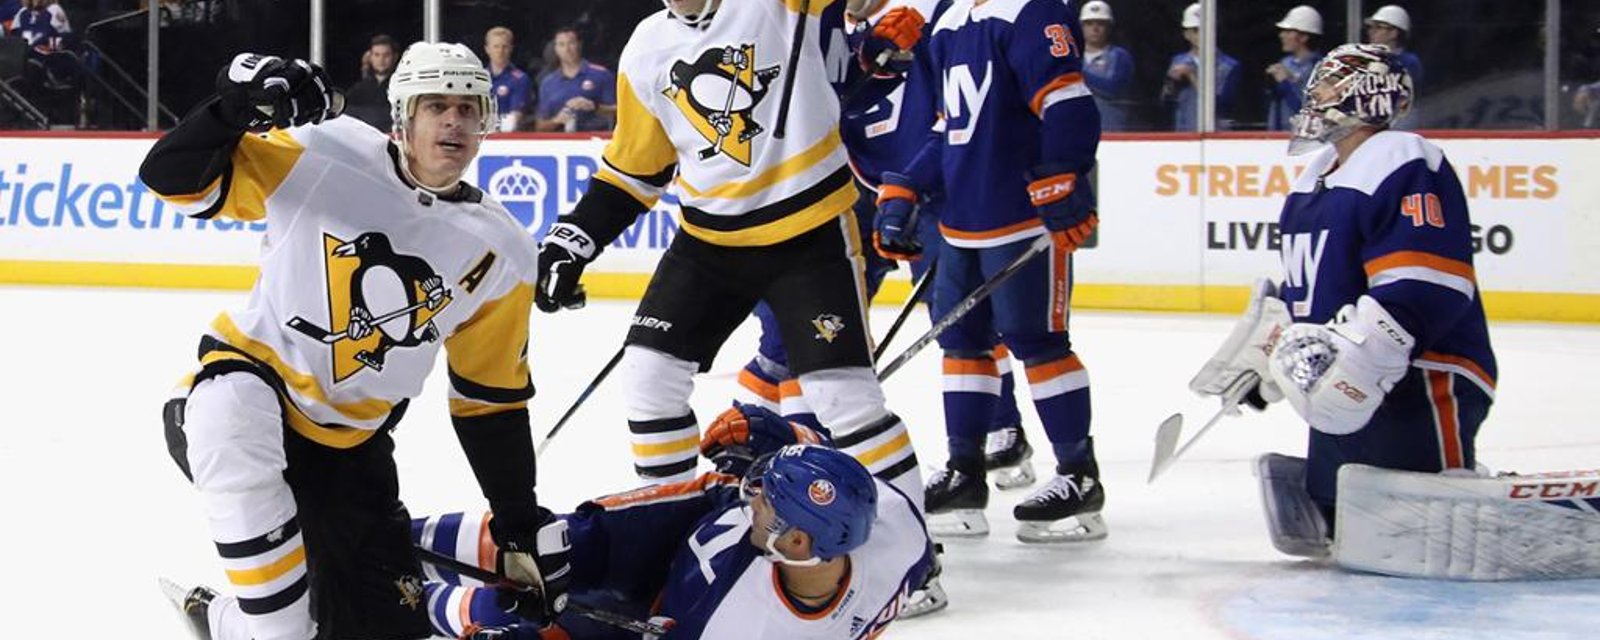 Penguins Twitter account trolls Islanders fan after epic comeback 